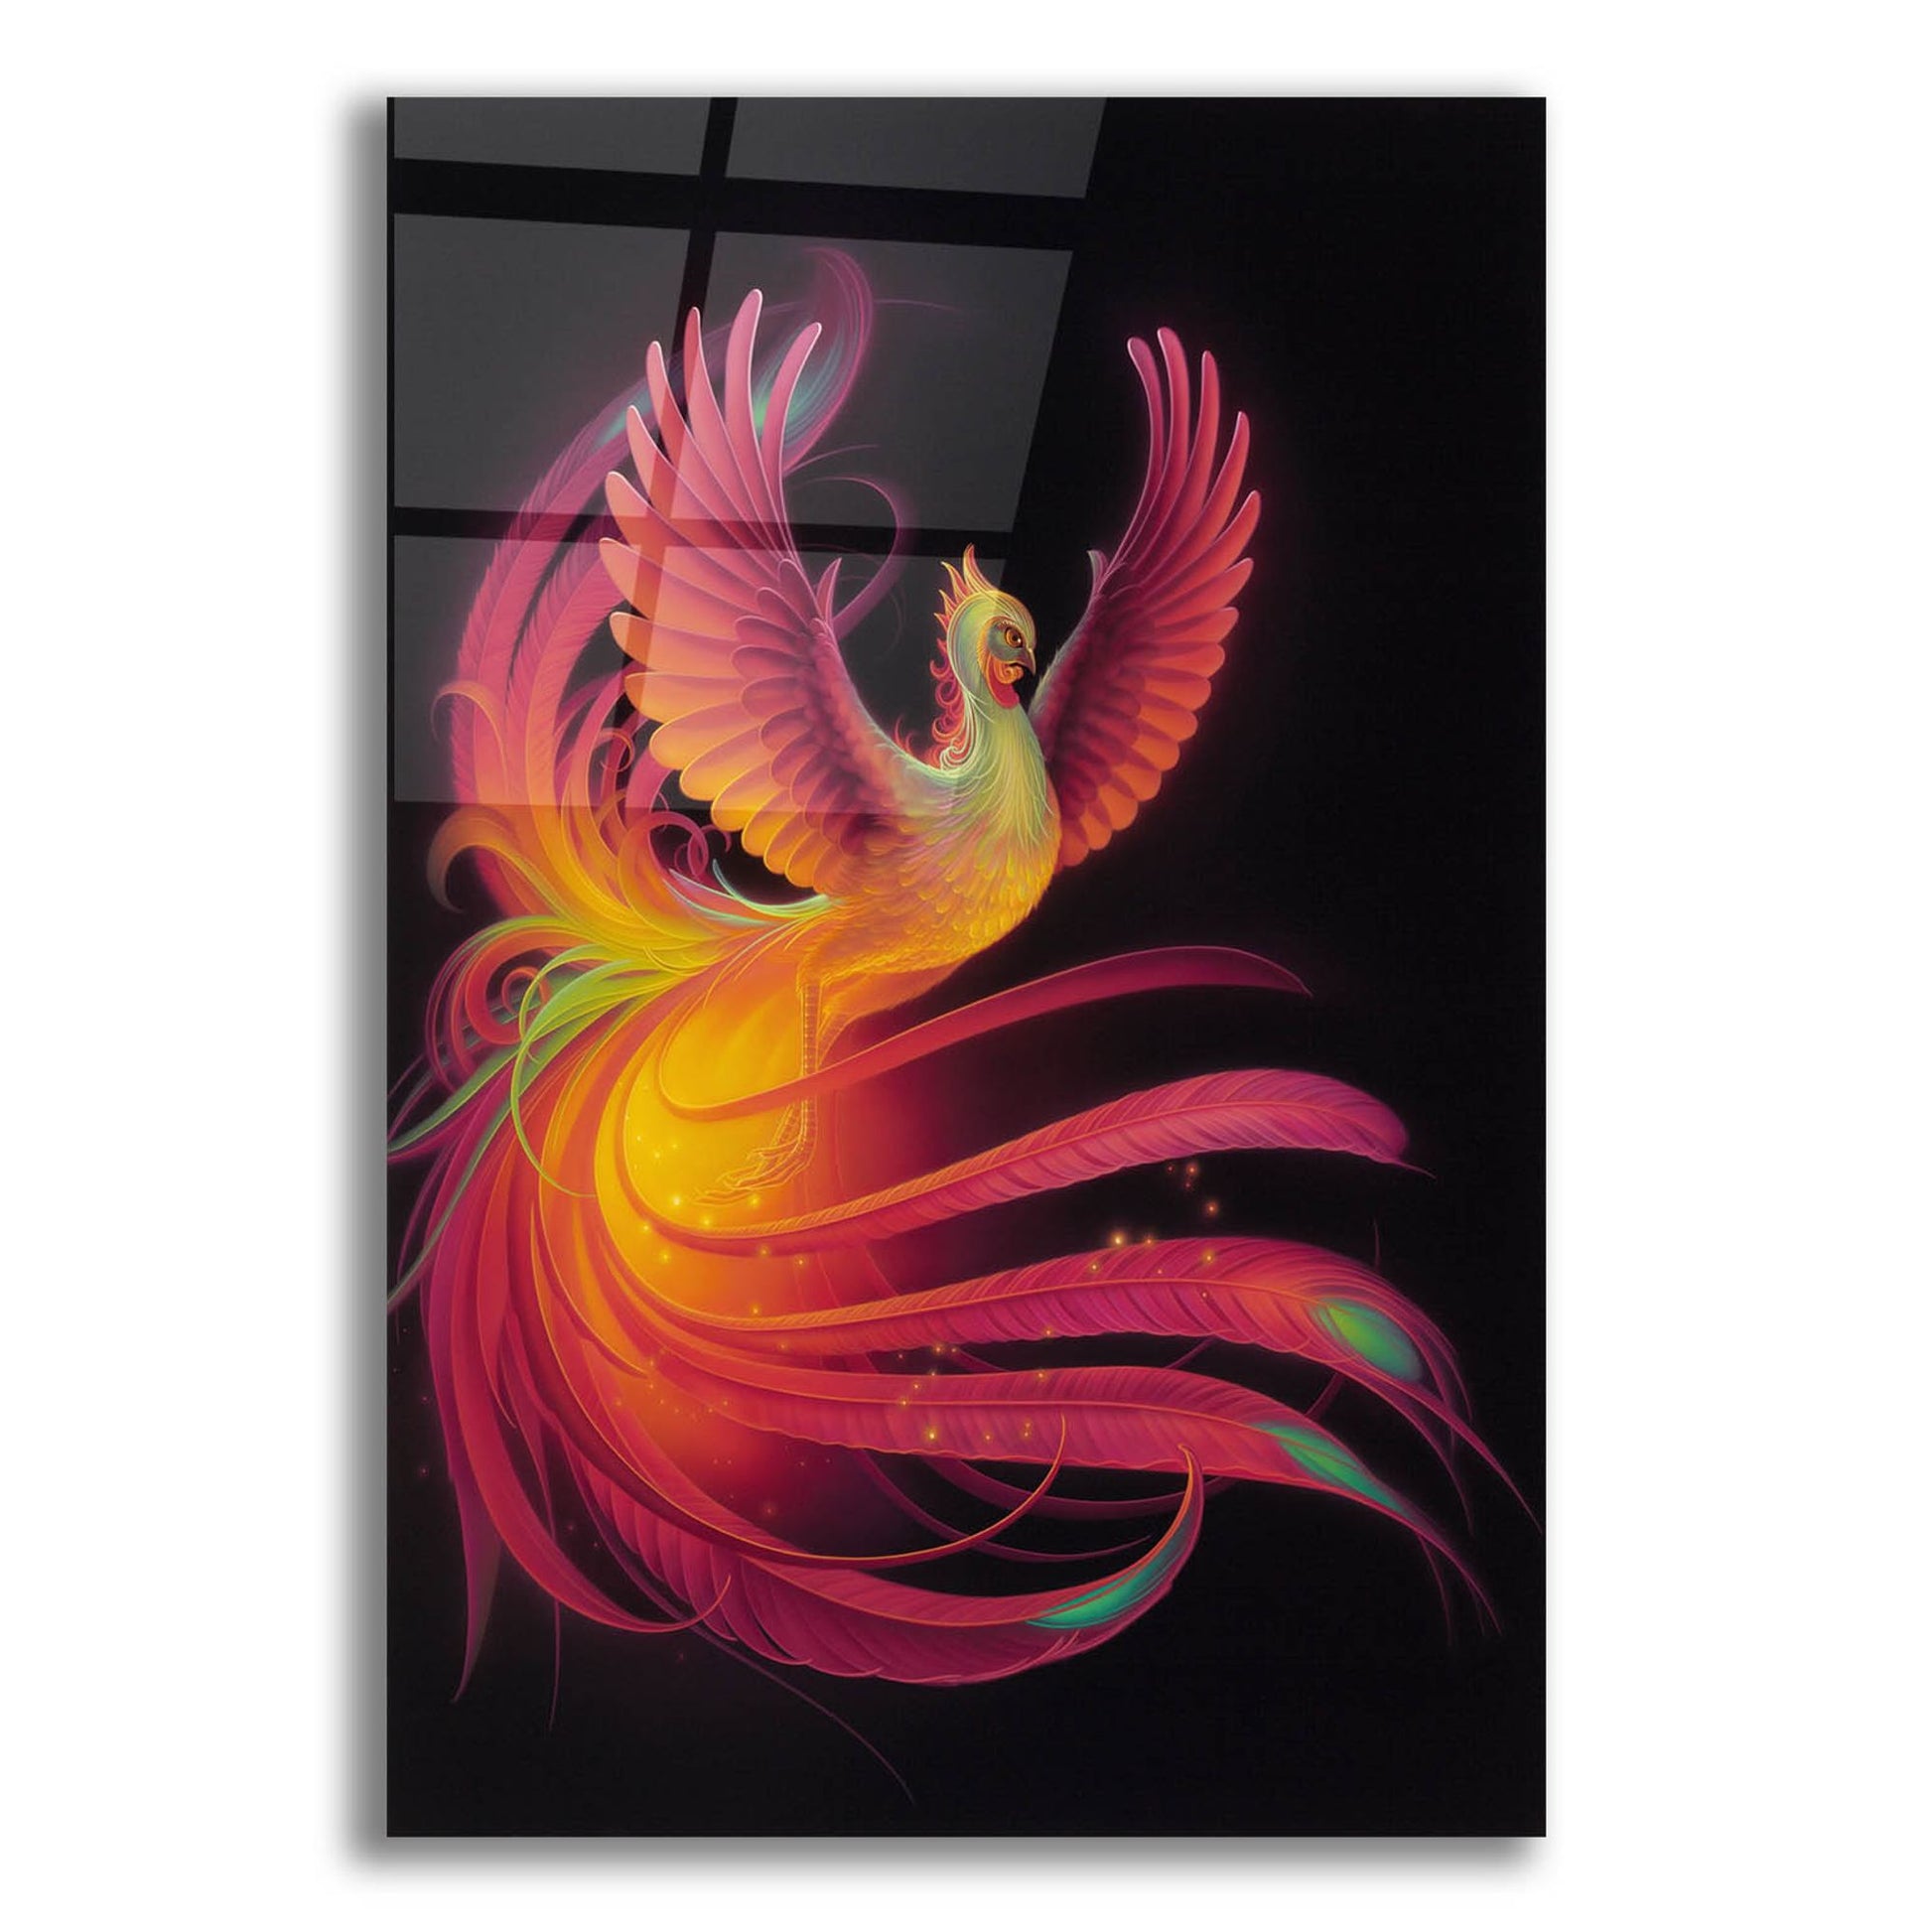 Epic Art 'Phoenix' by Kirk Reinert, Acrylic Glass Wall Art,16x24